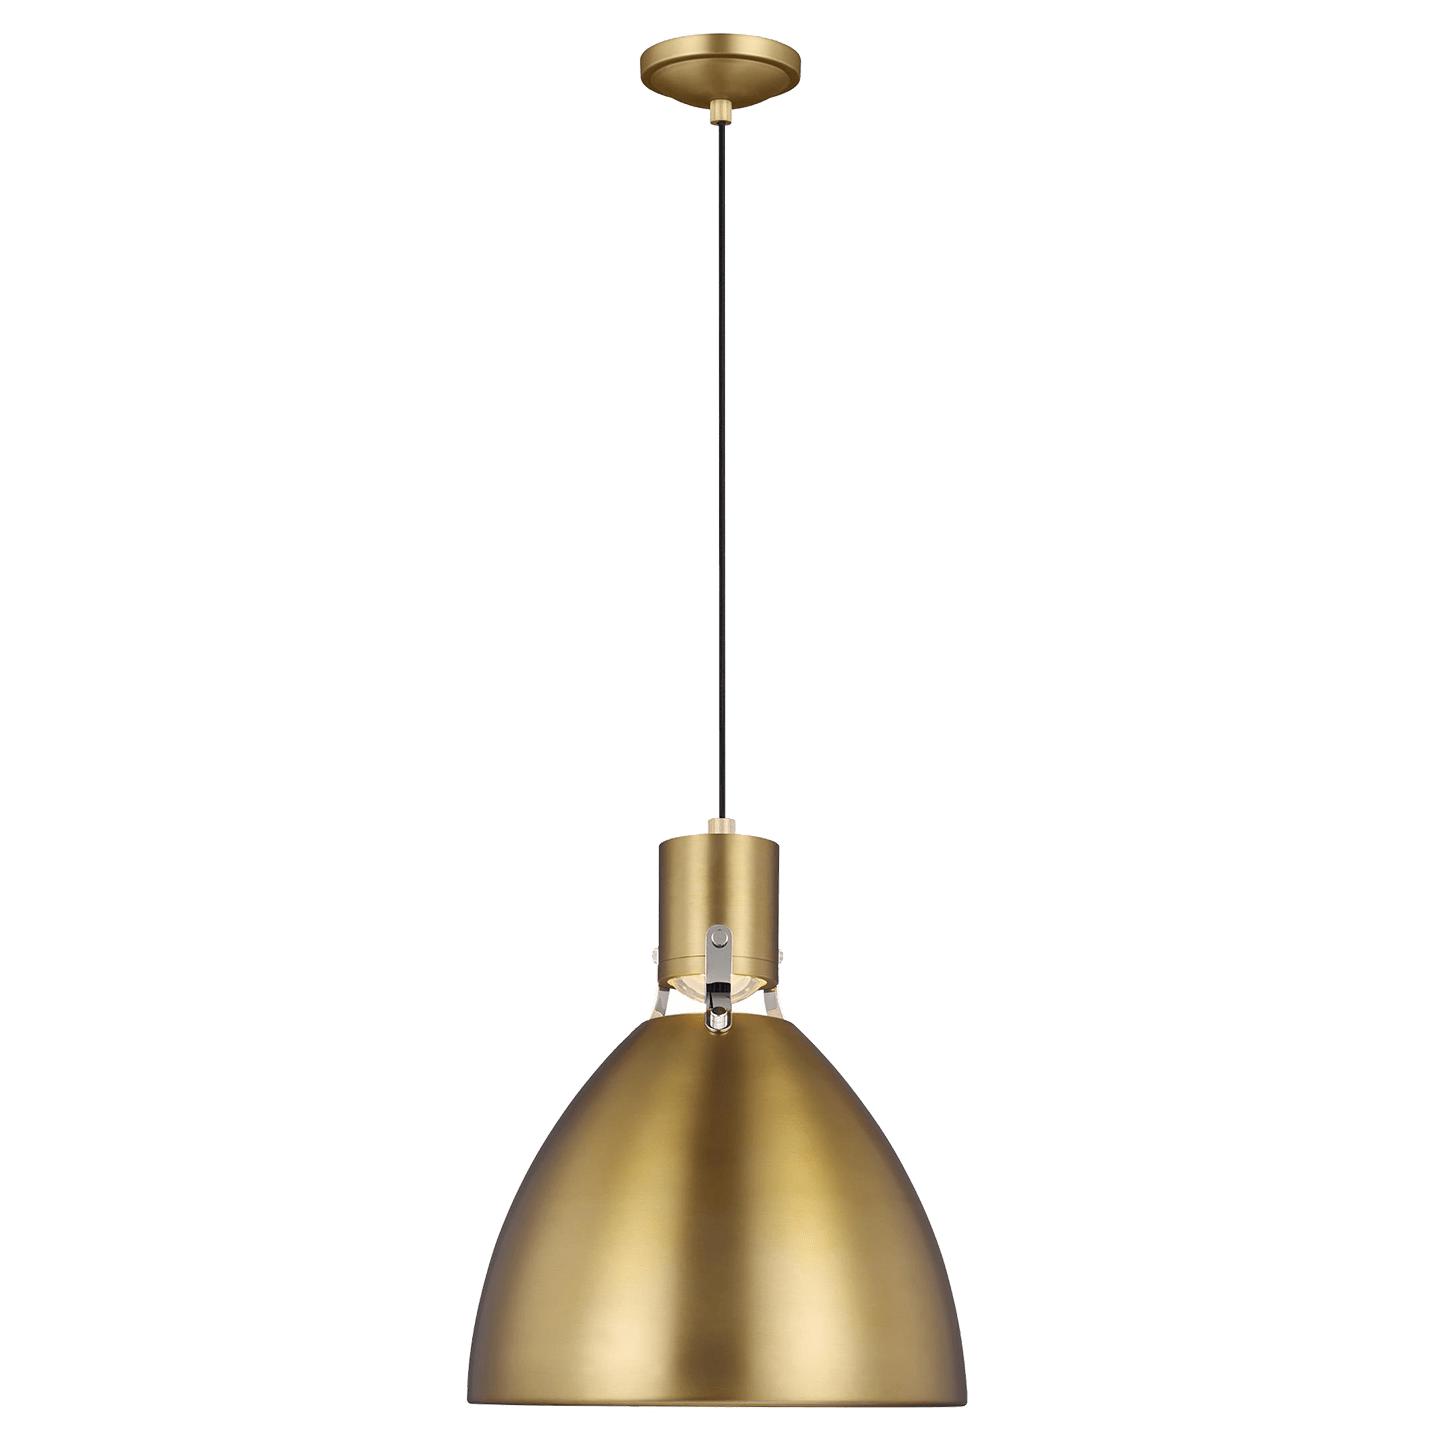 Купить Подвесной светильник Brynne Small Pendant в интернет-магазине roooms.ru